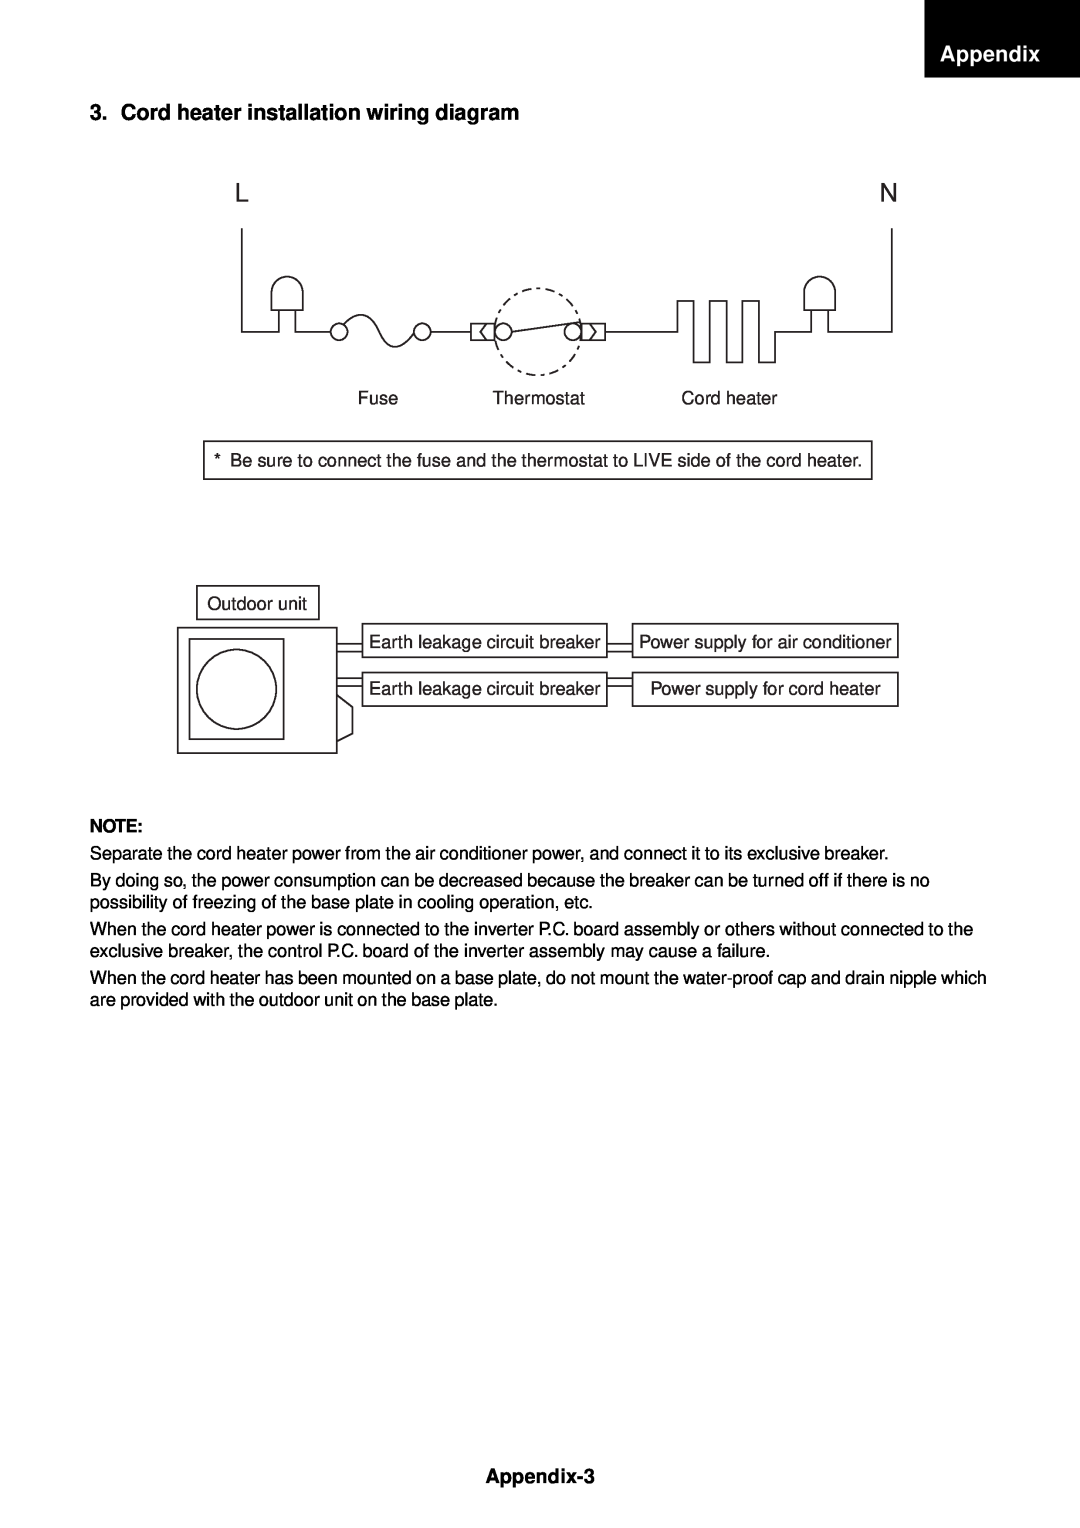 Toshiba RAS-M14EACV-E, RAS-M13EKCVP-E, RAS-M18EACV-E, RAS-M16EKCVP-E Cord heater installation wiring diagram, Appendix-3 